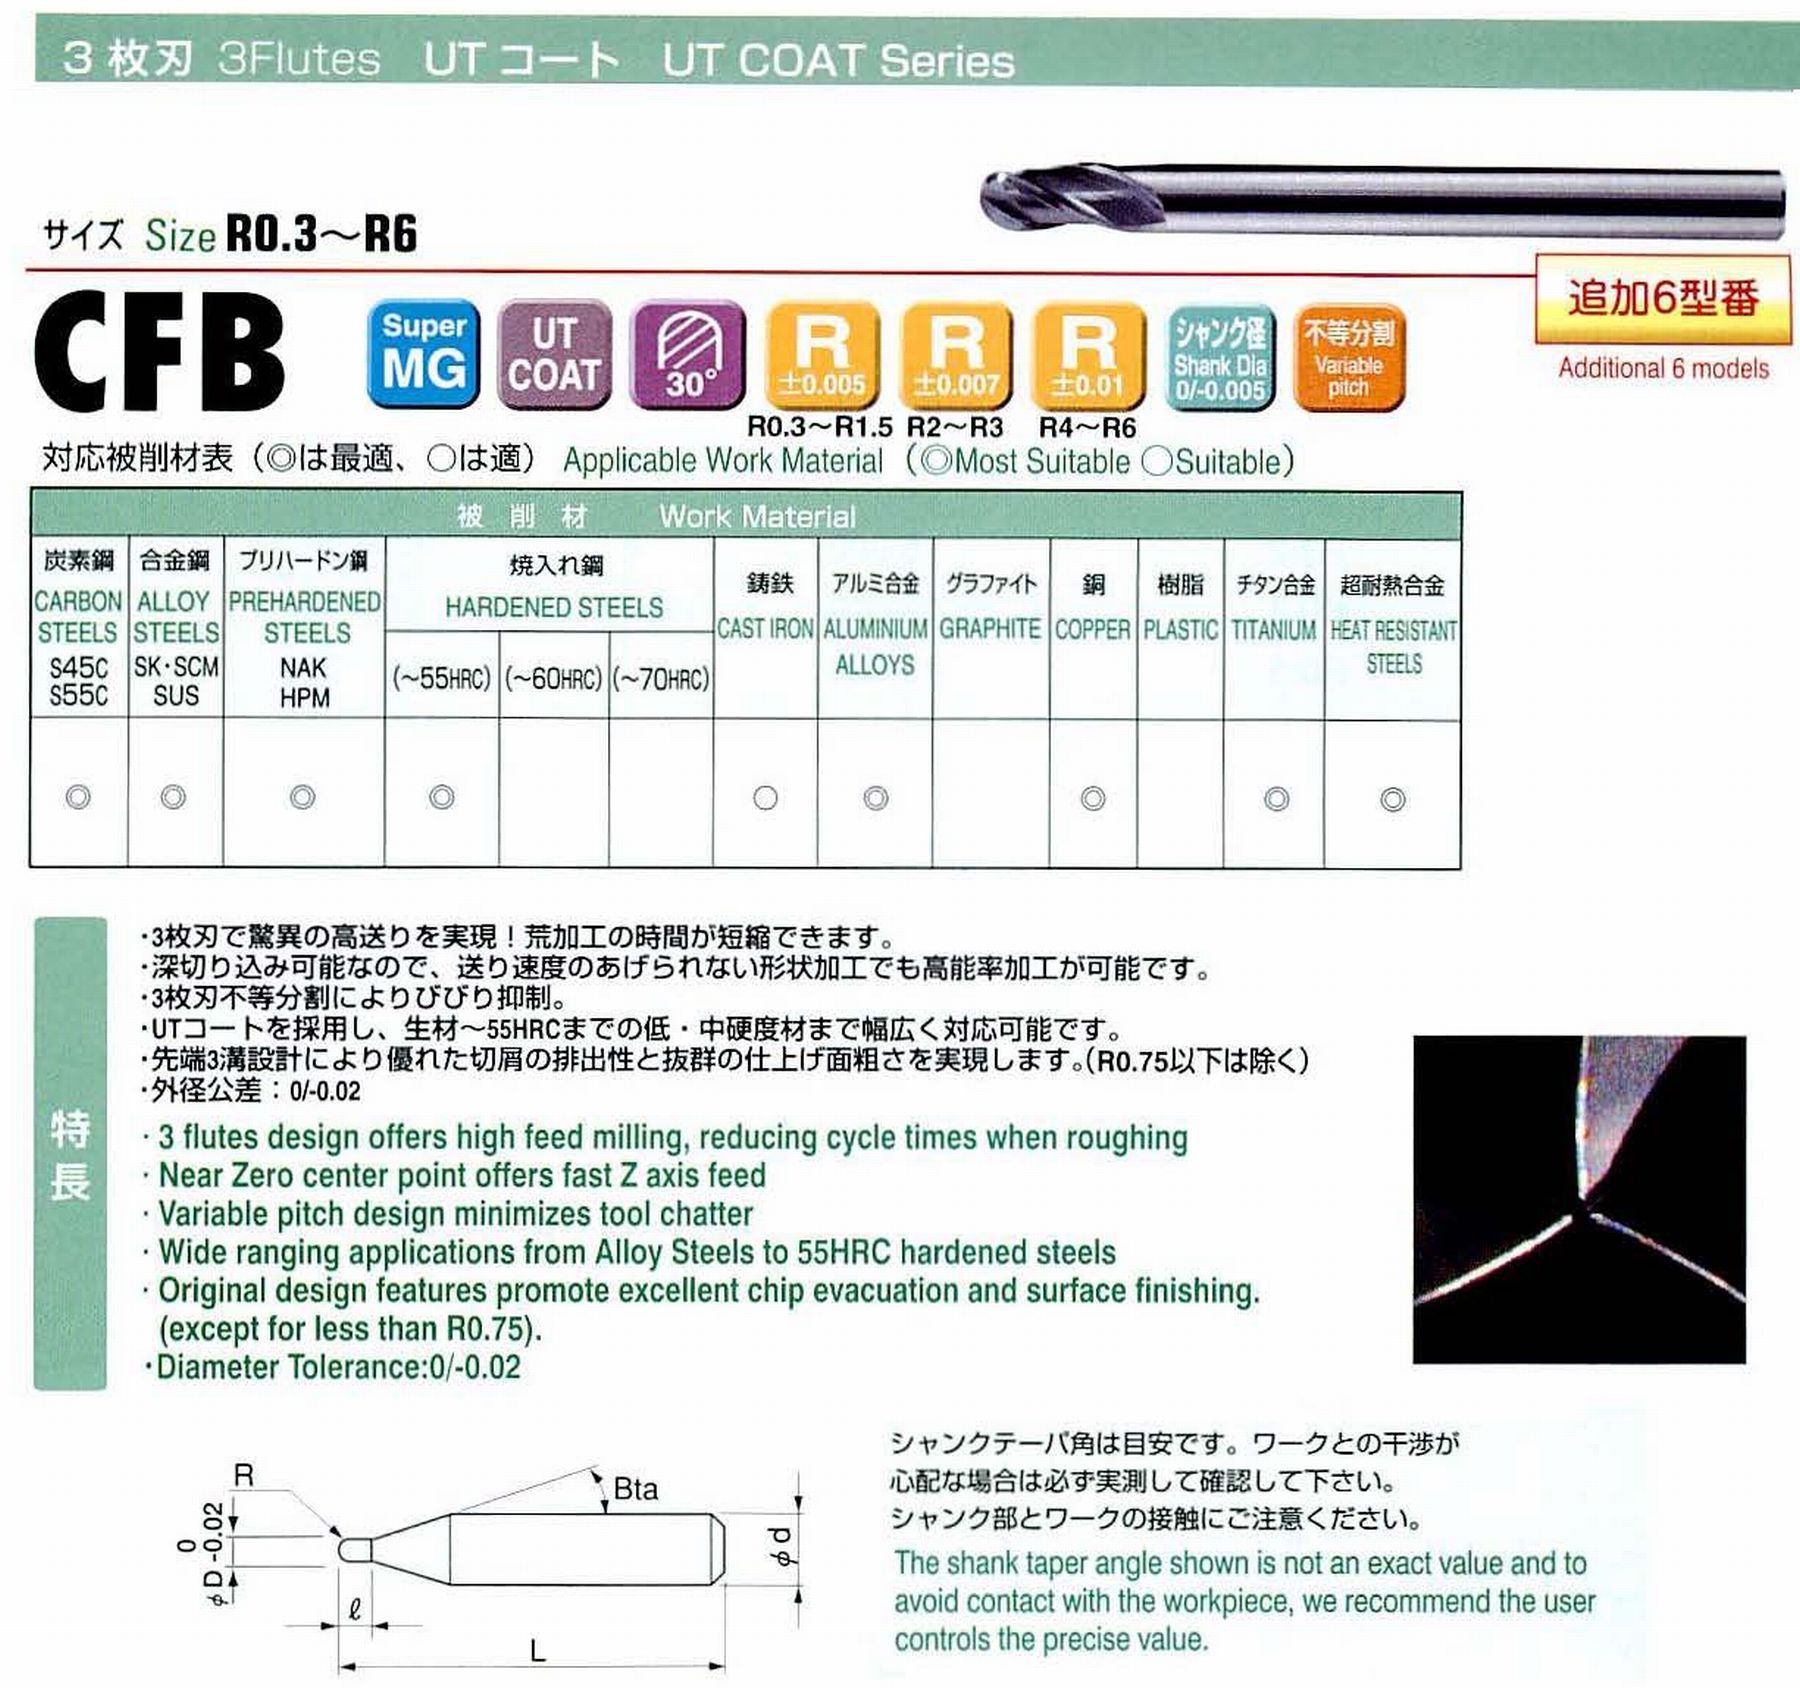 ユニオンツール 3枚刃 CFB3006-0090 ボール半径R0.3 刃長0.9 シャンクテーパ角16° 全長50 シャンク径4